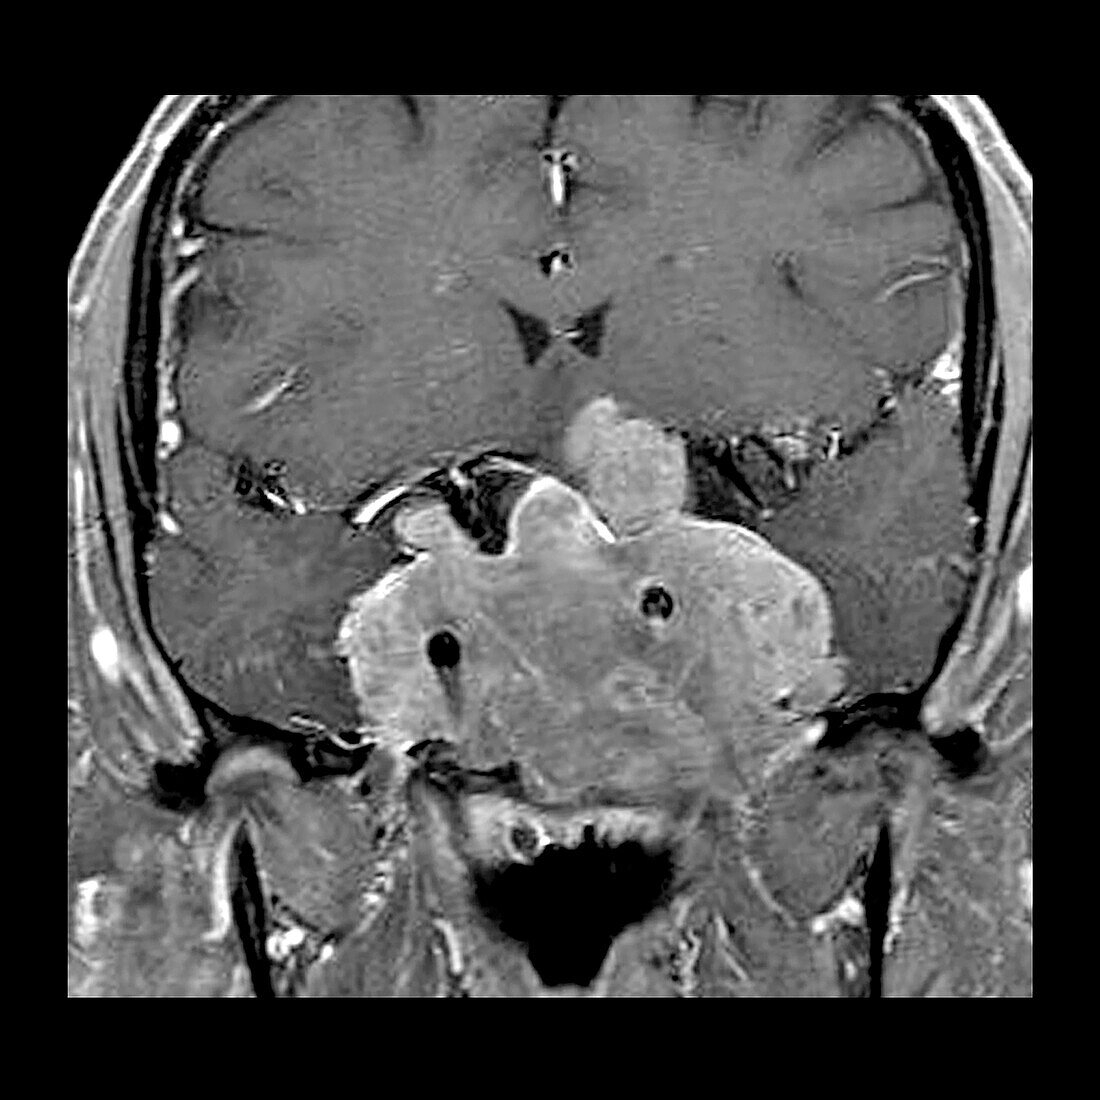 Invasive Pituitary Adenoma on MRI